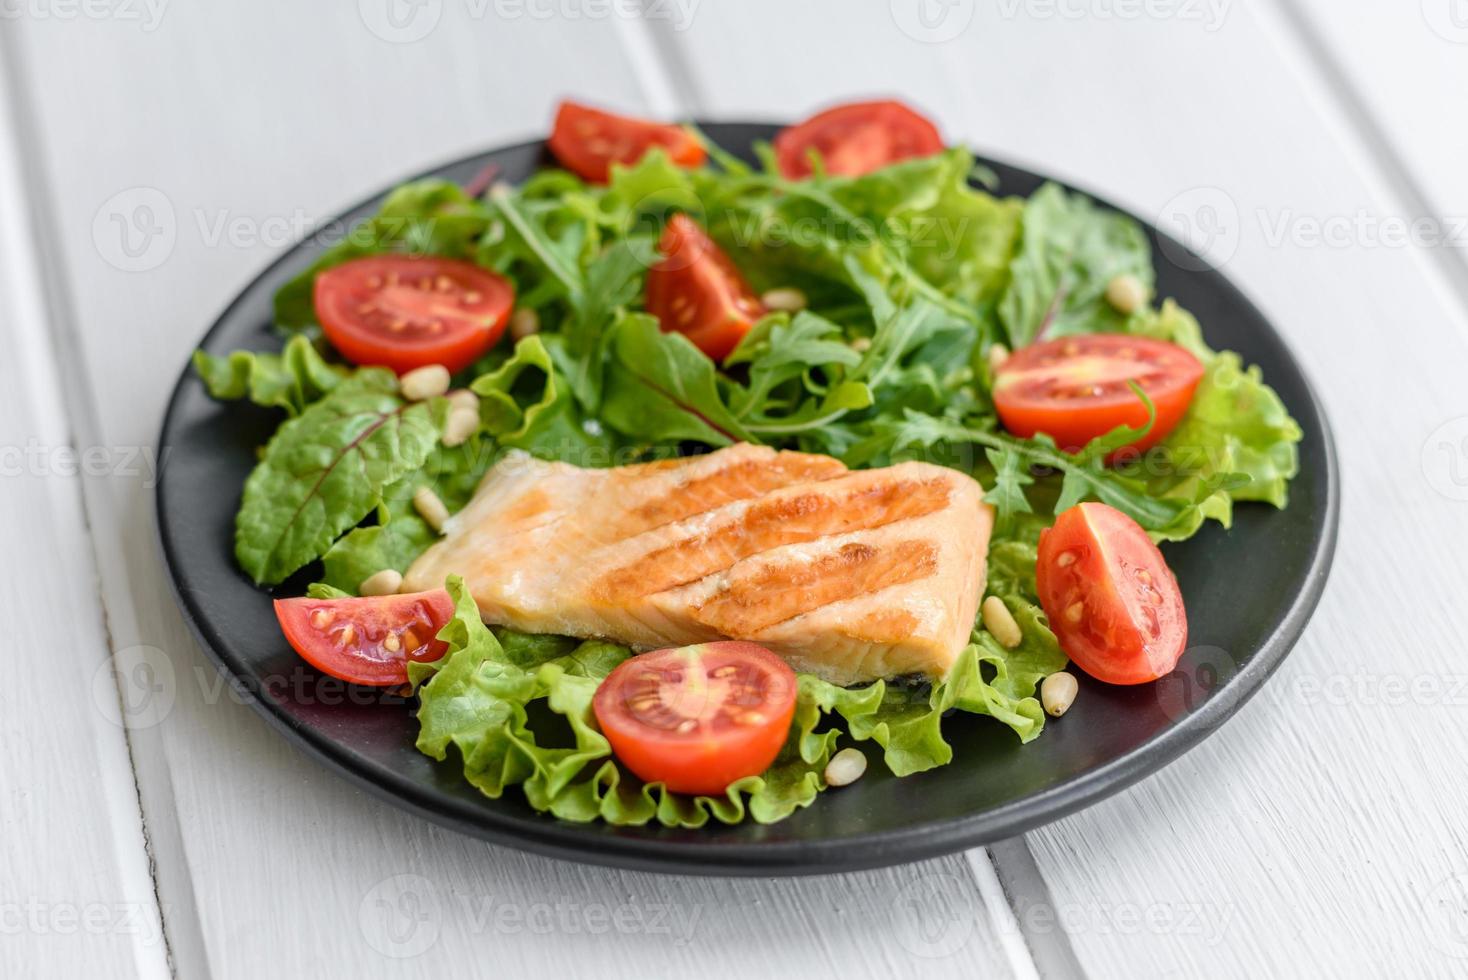 deliciosa salada fresca com peixe, tomate e folhas de alface foto